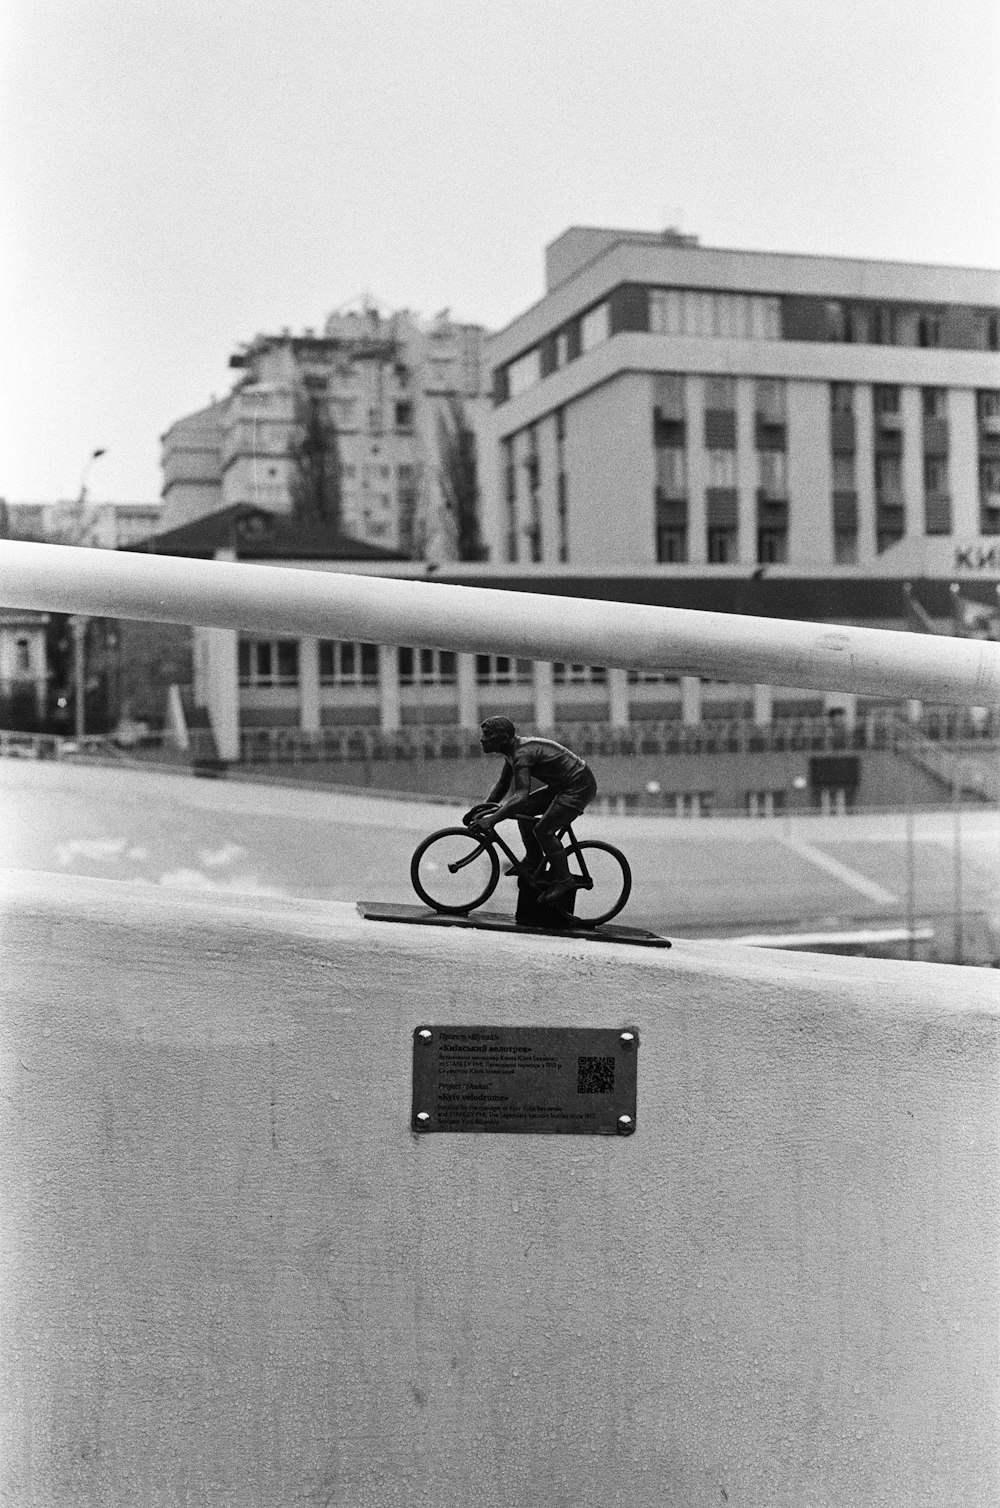 Foto in scala di grigi dell'uomo che va in bicicletta sulla strada